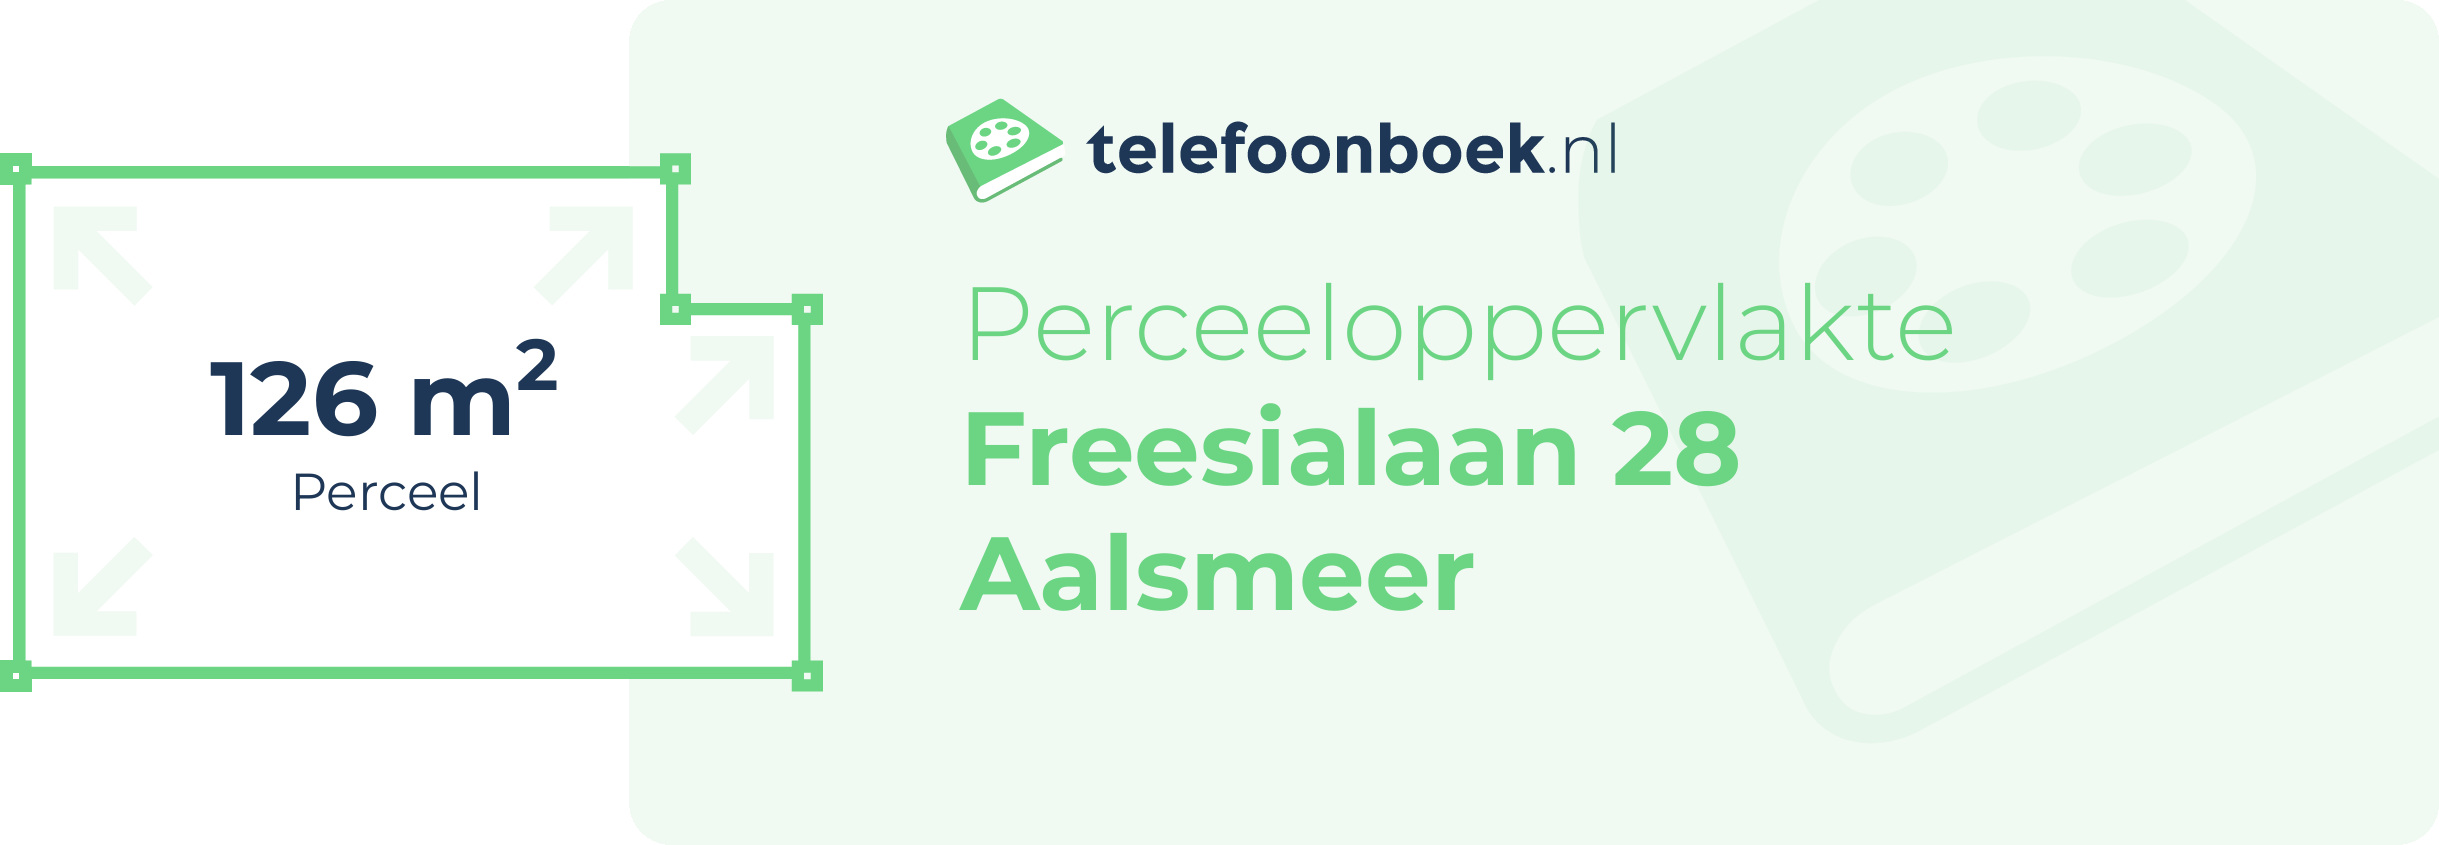 Perceeloppervlakte Freesialaan 28 Aalsmeer